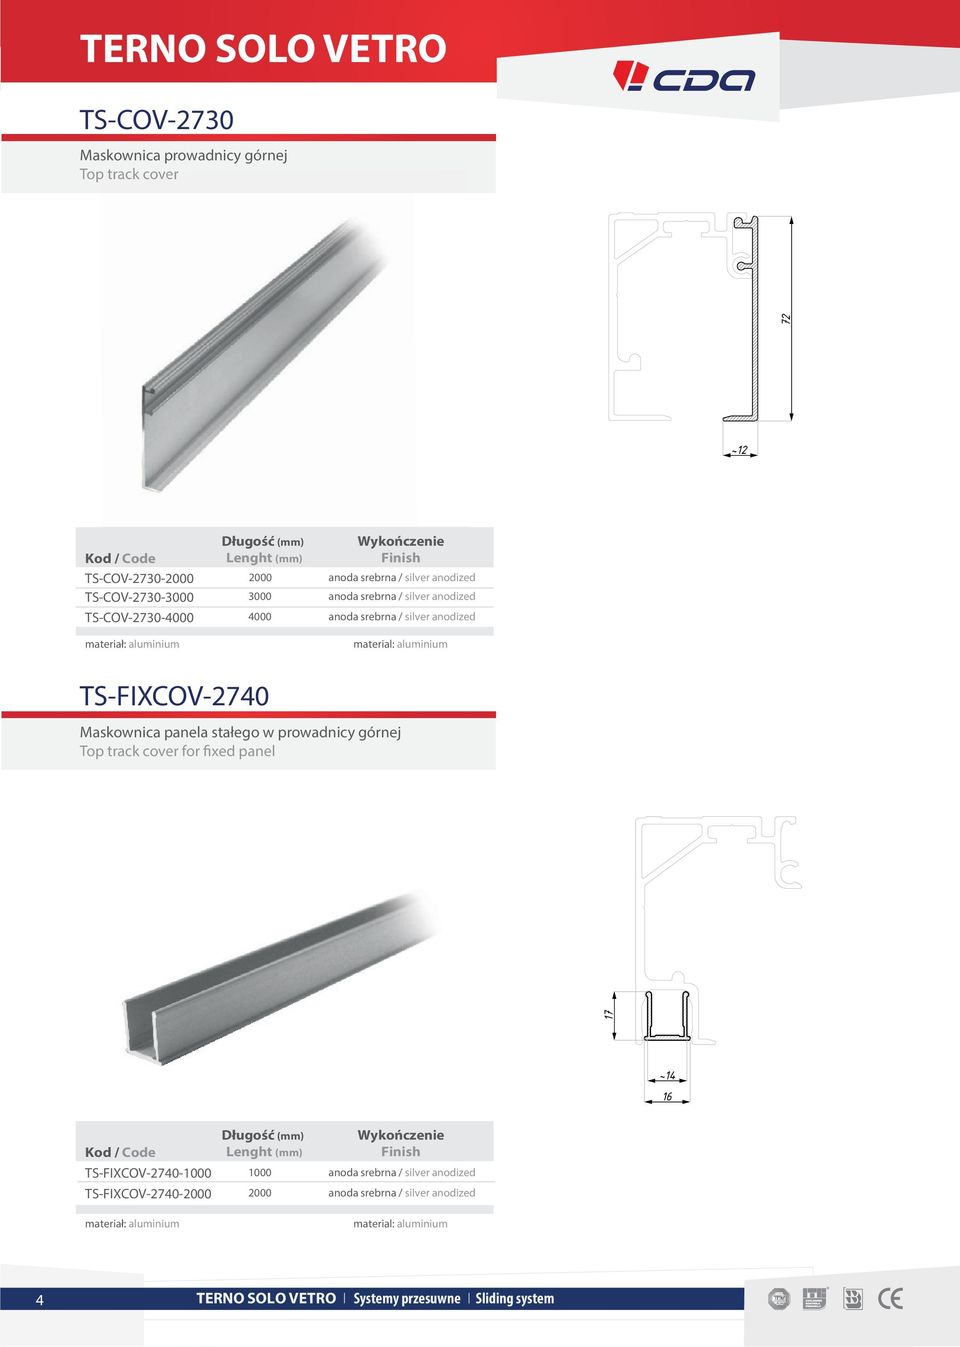 stałego w prowadnicy górnej Top track cover for fixed panel 17 ~14 16 TS-FIXCOV-2740-1000 Długość (mm) Lenght (mm) 1000 Wykończenie Finish anoda srebrna / silver anodized